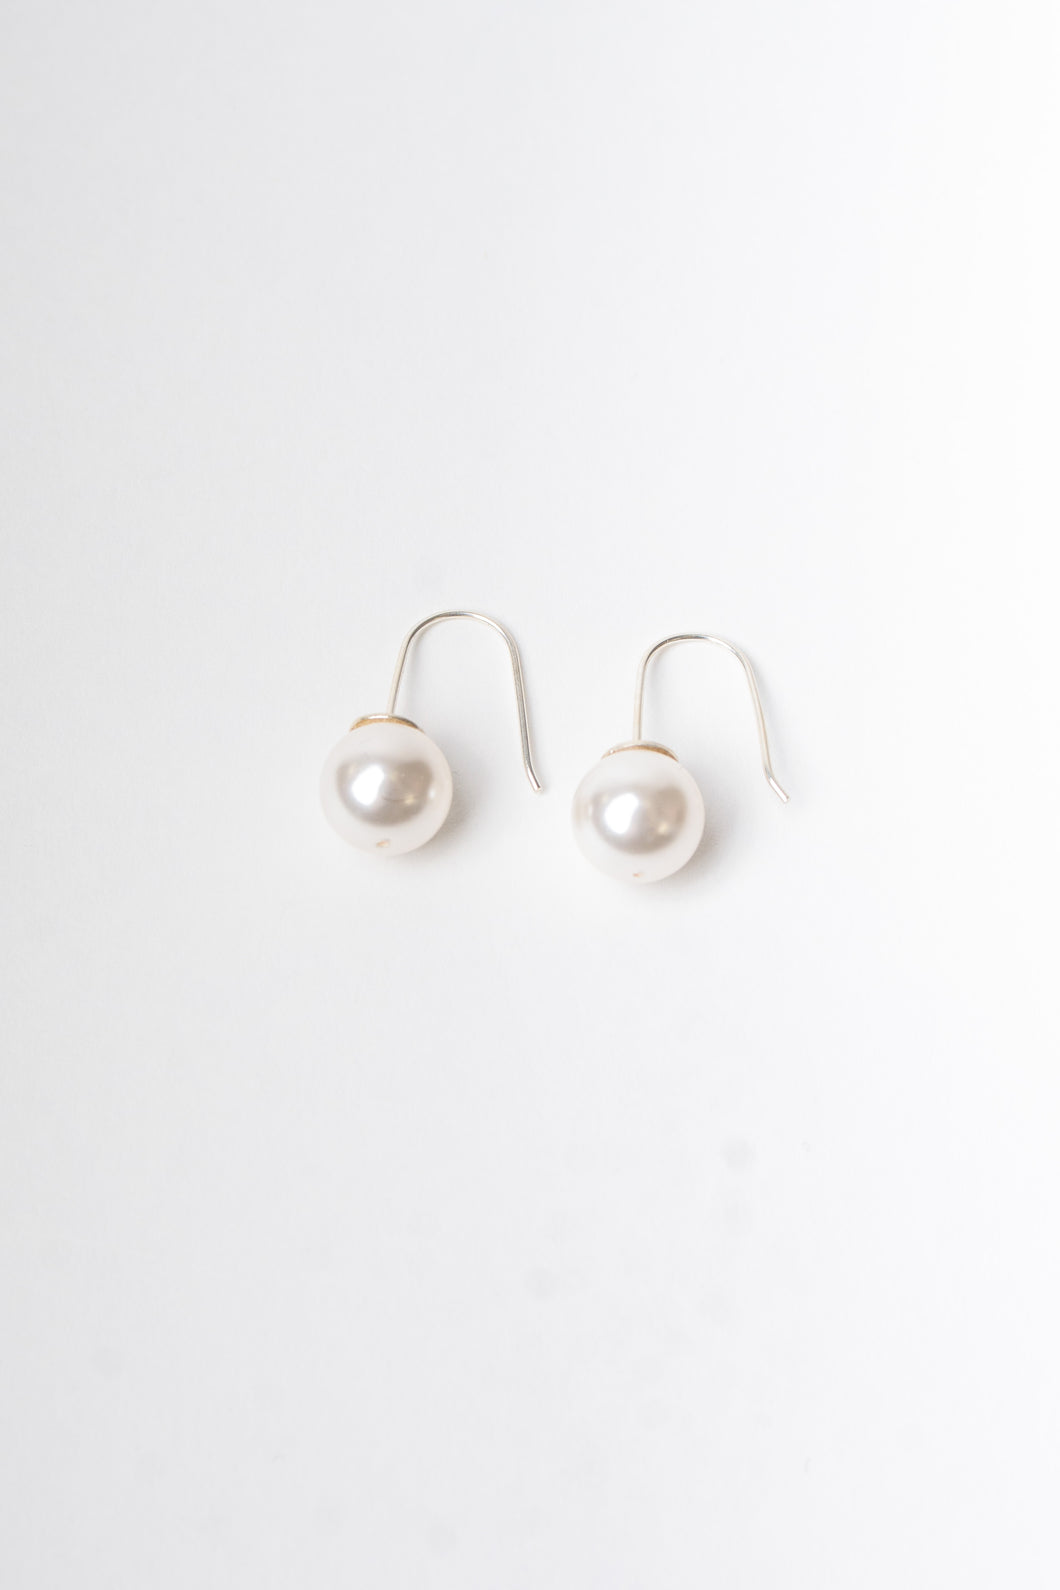 Natalie Pearl earrings